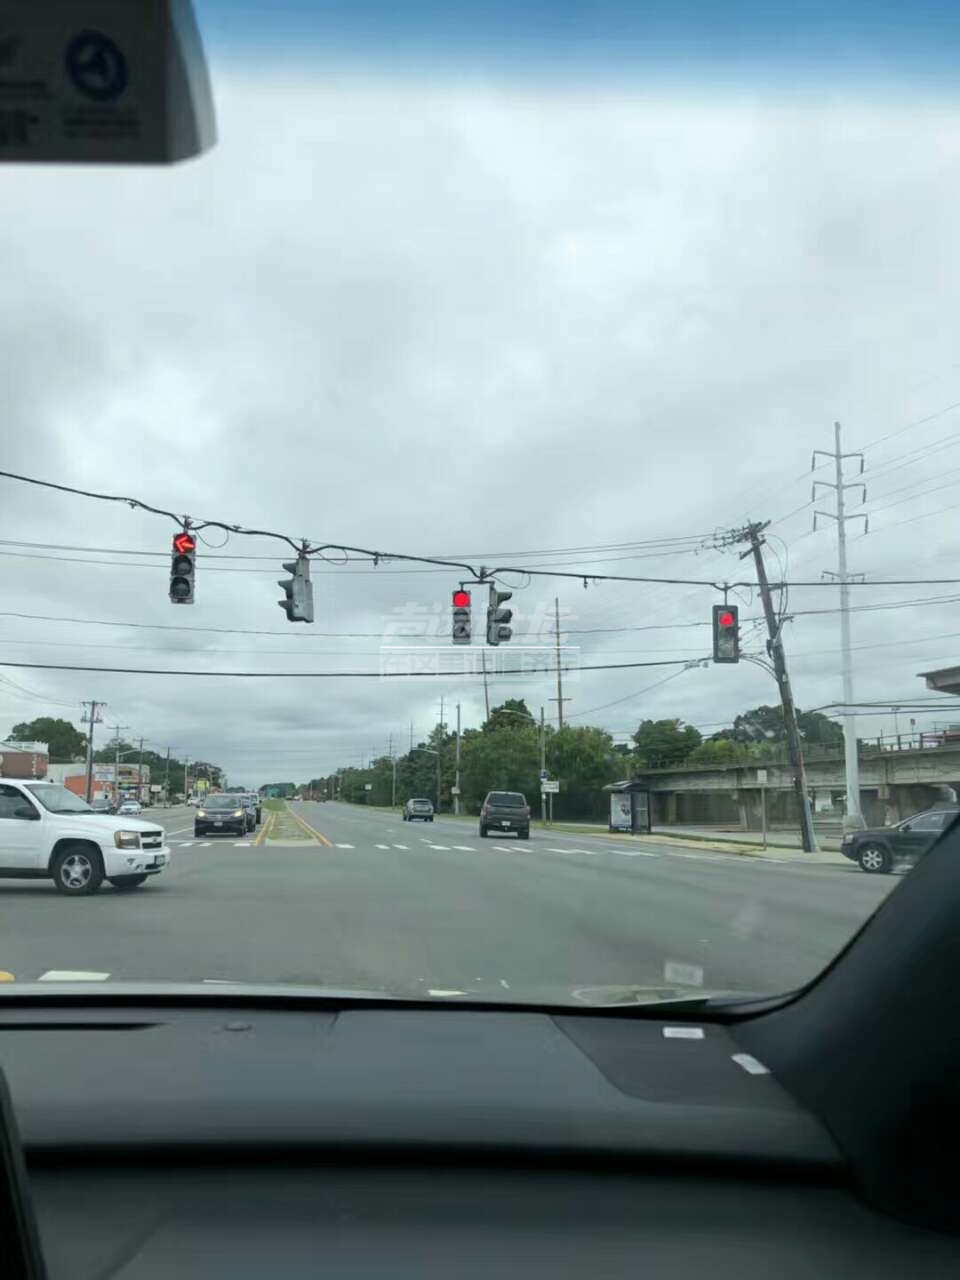 这是哪国的红绿灯